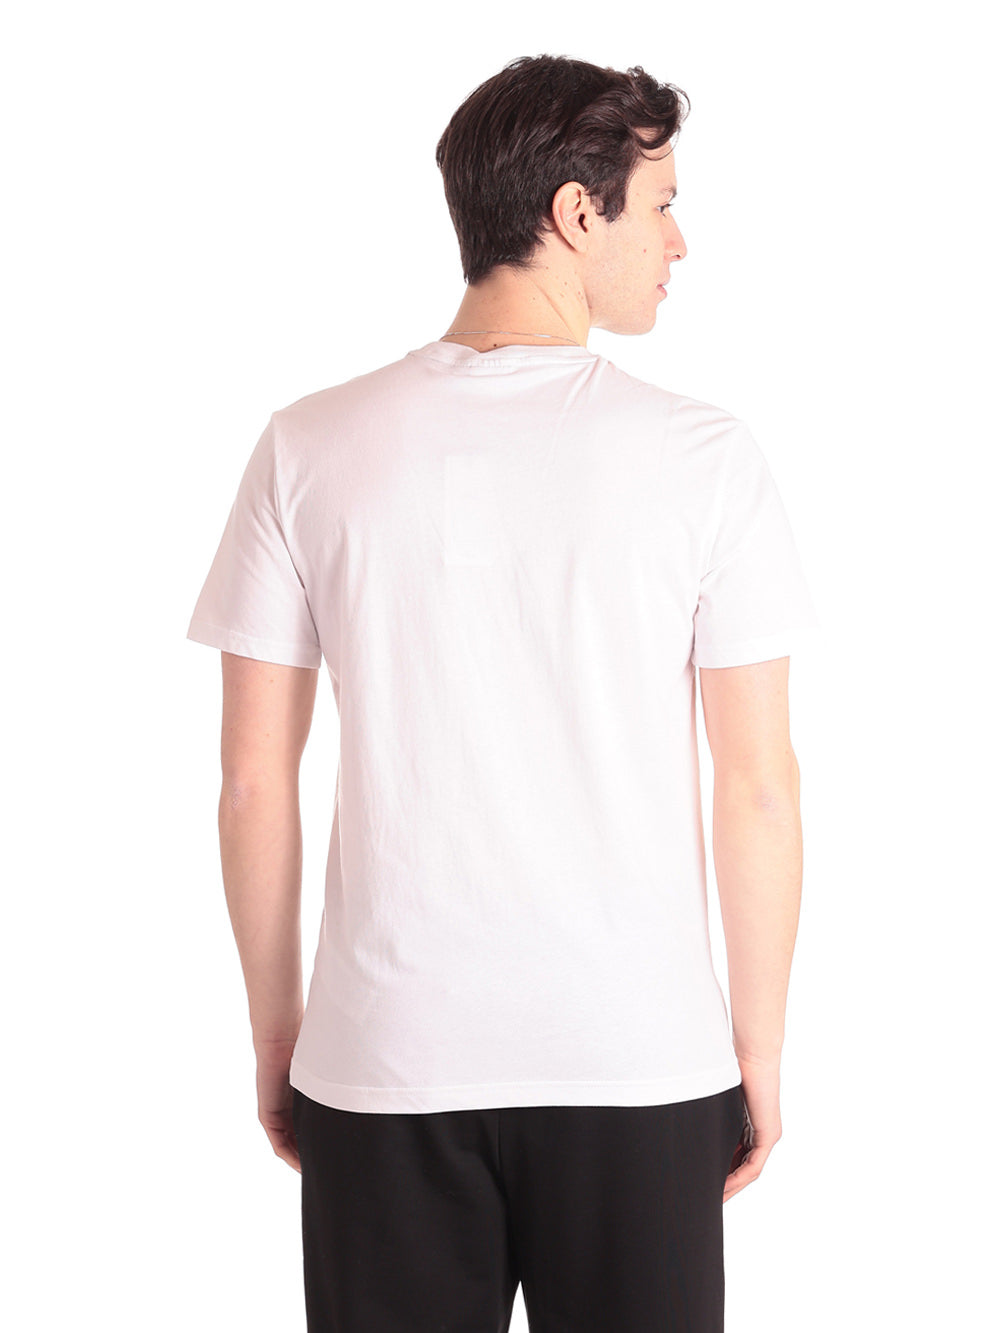 T-Shirt Fam0340 Bright White